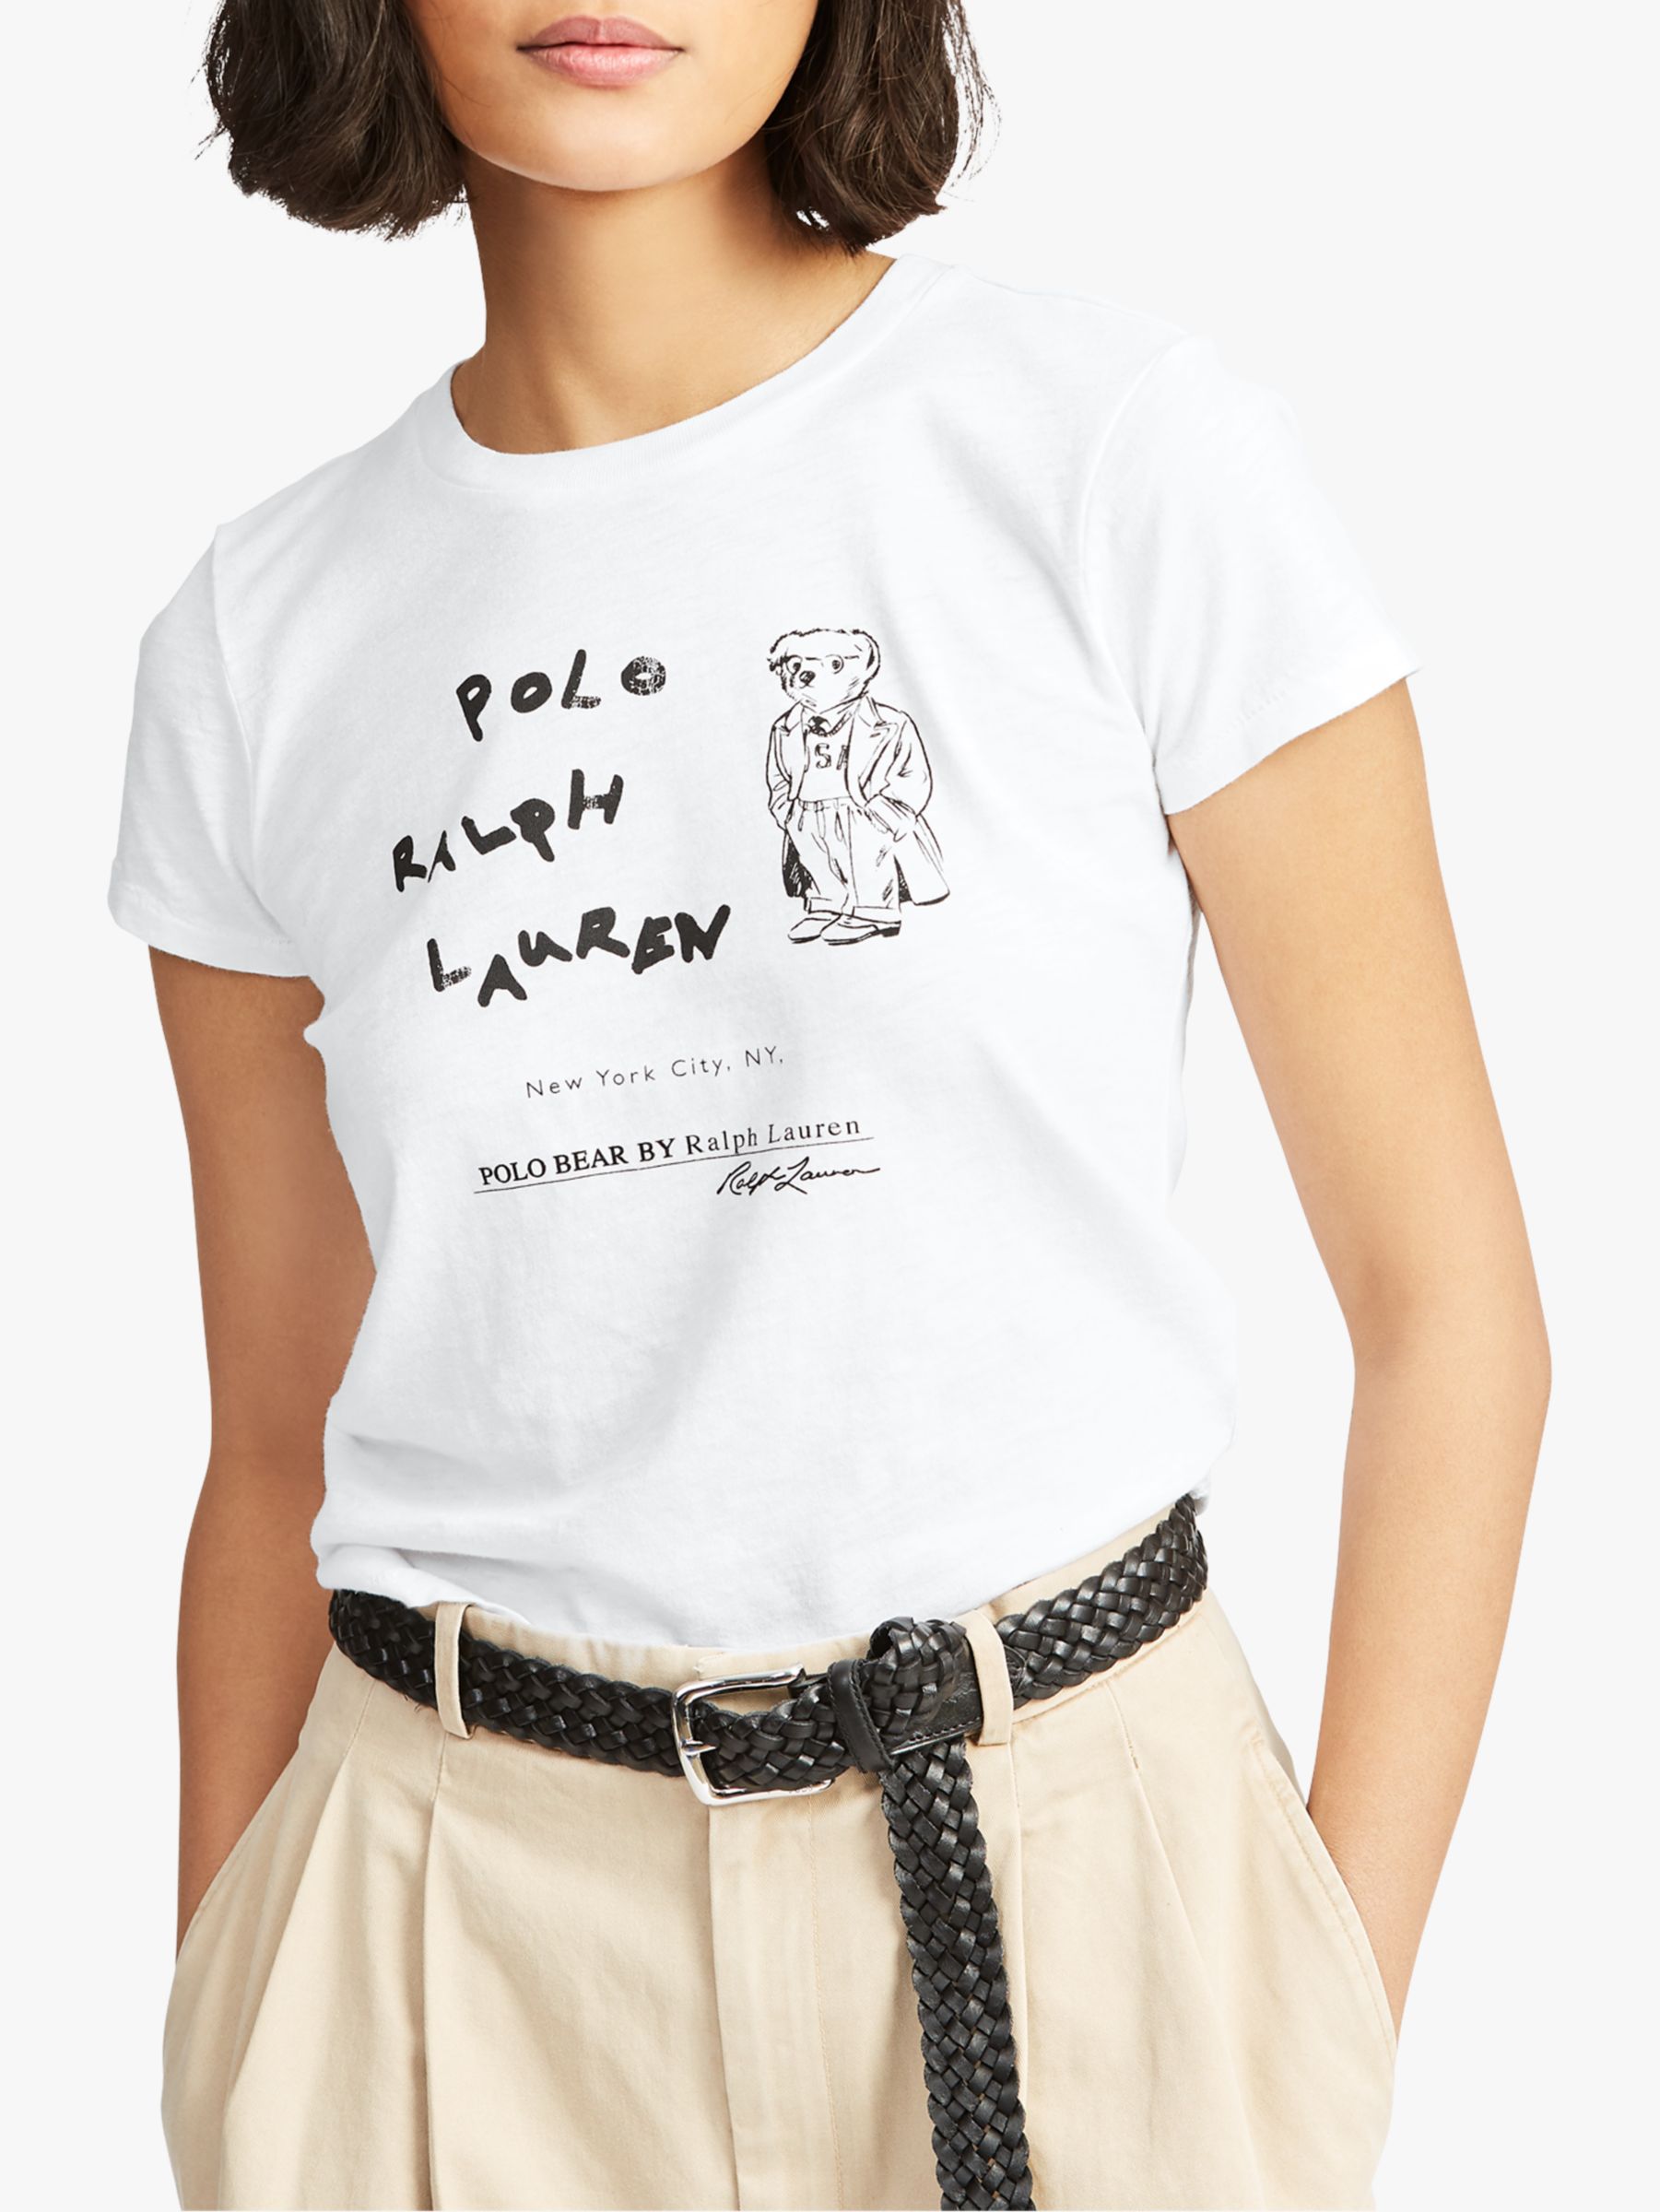 women's polo bear t shirt